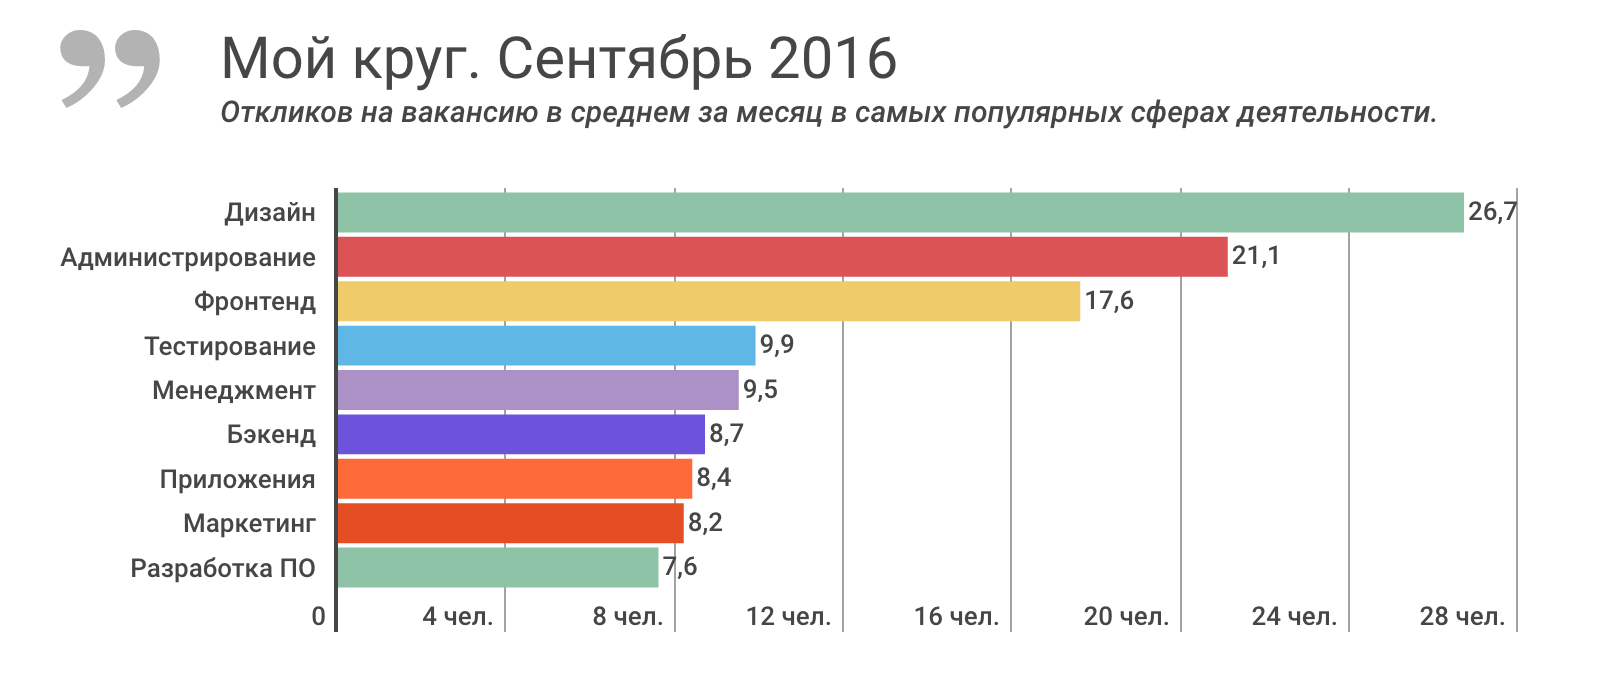 Отчет о результатах «Моего круга» за сентябрь 2016, и самые популярные вакансии месяца - 1